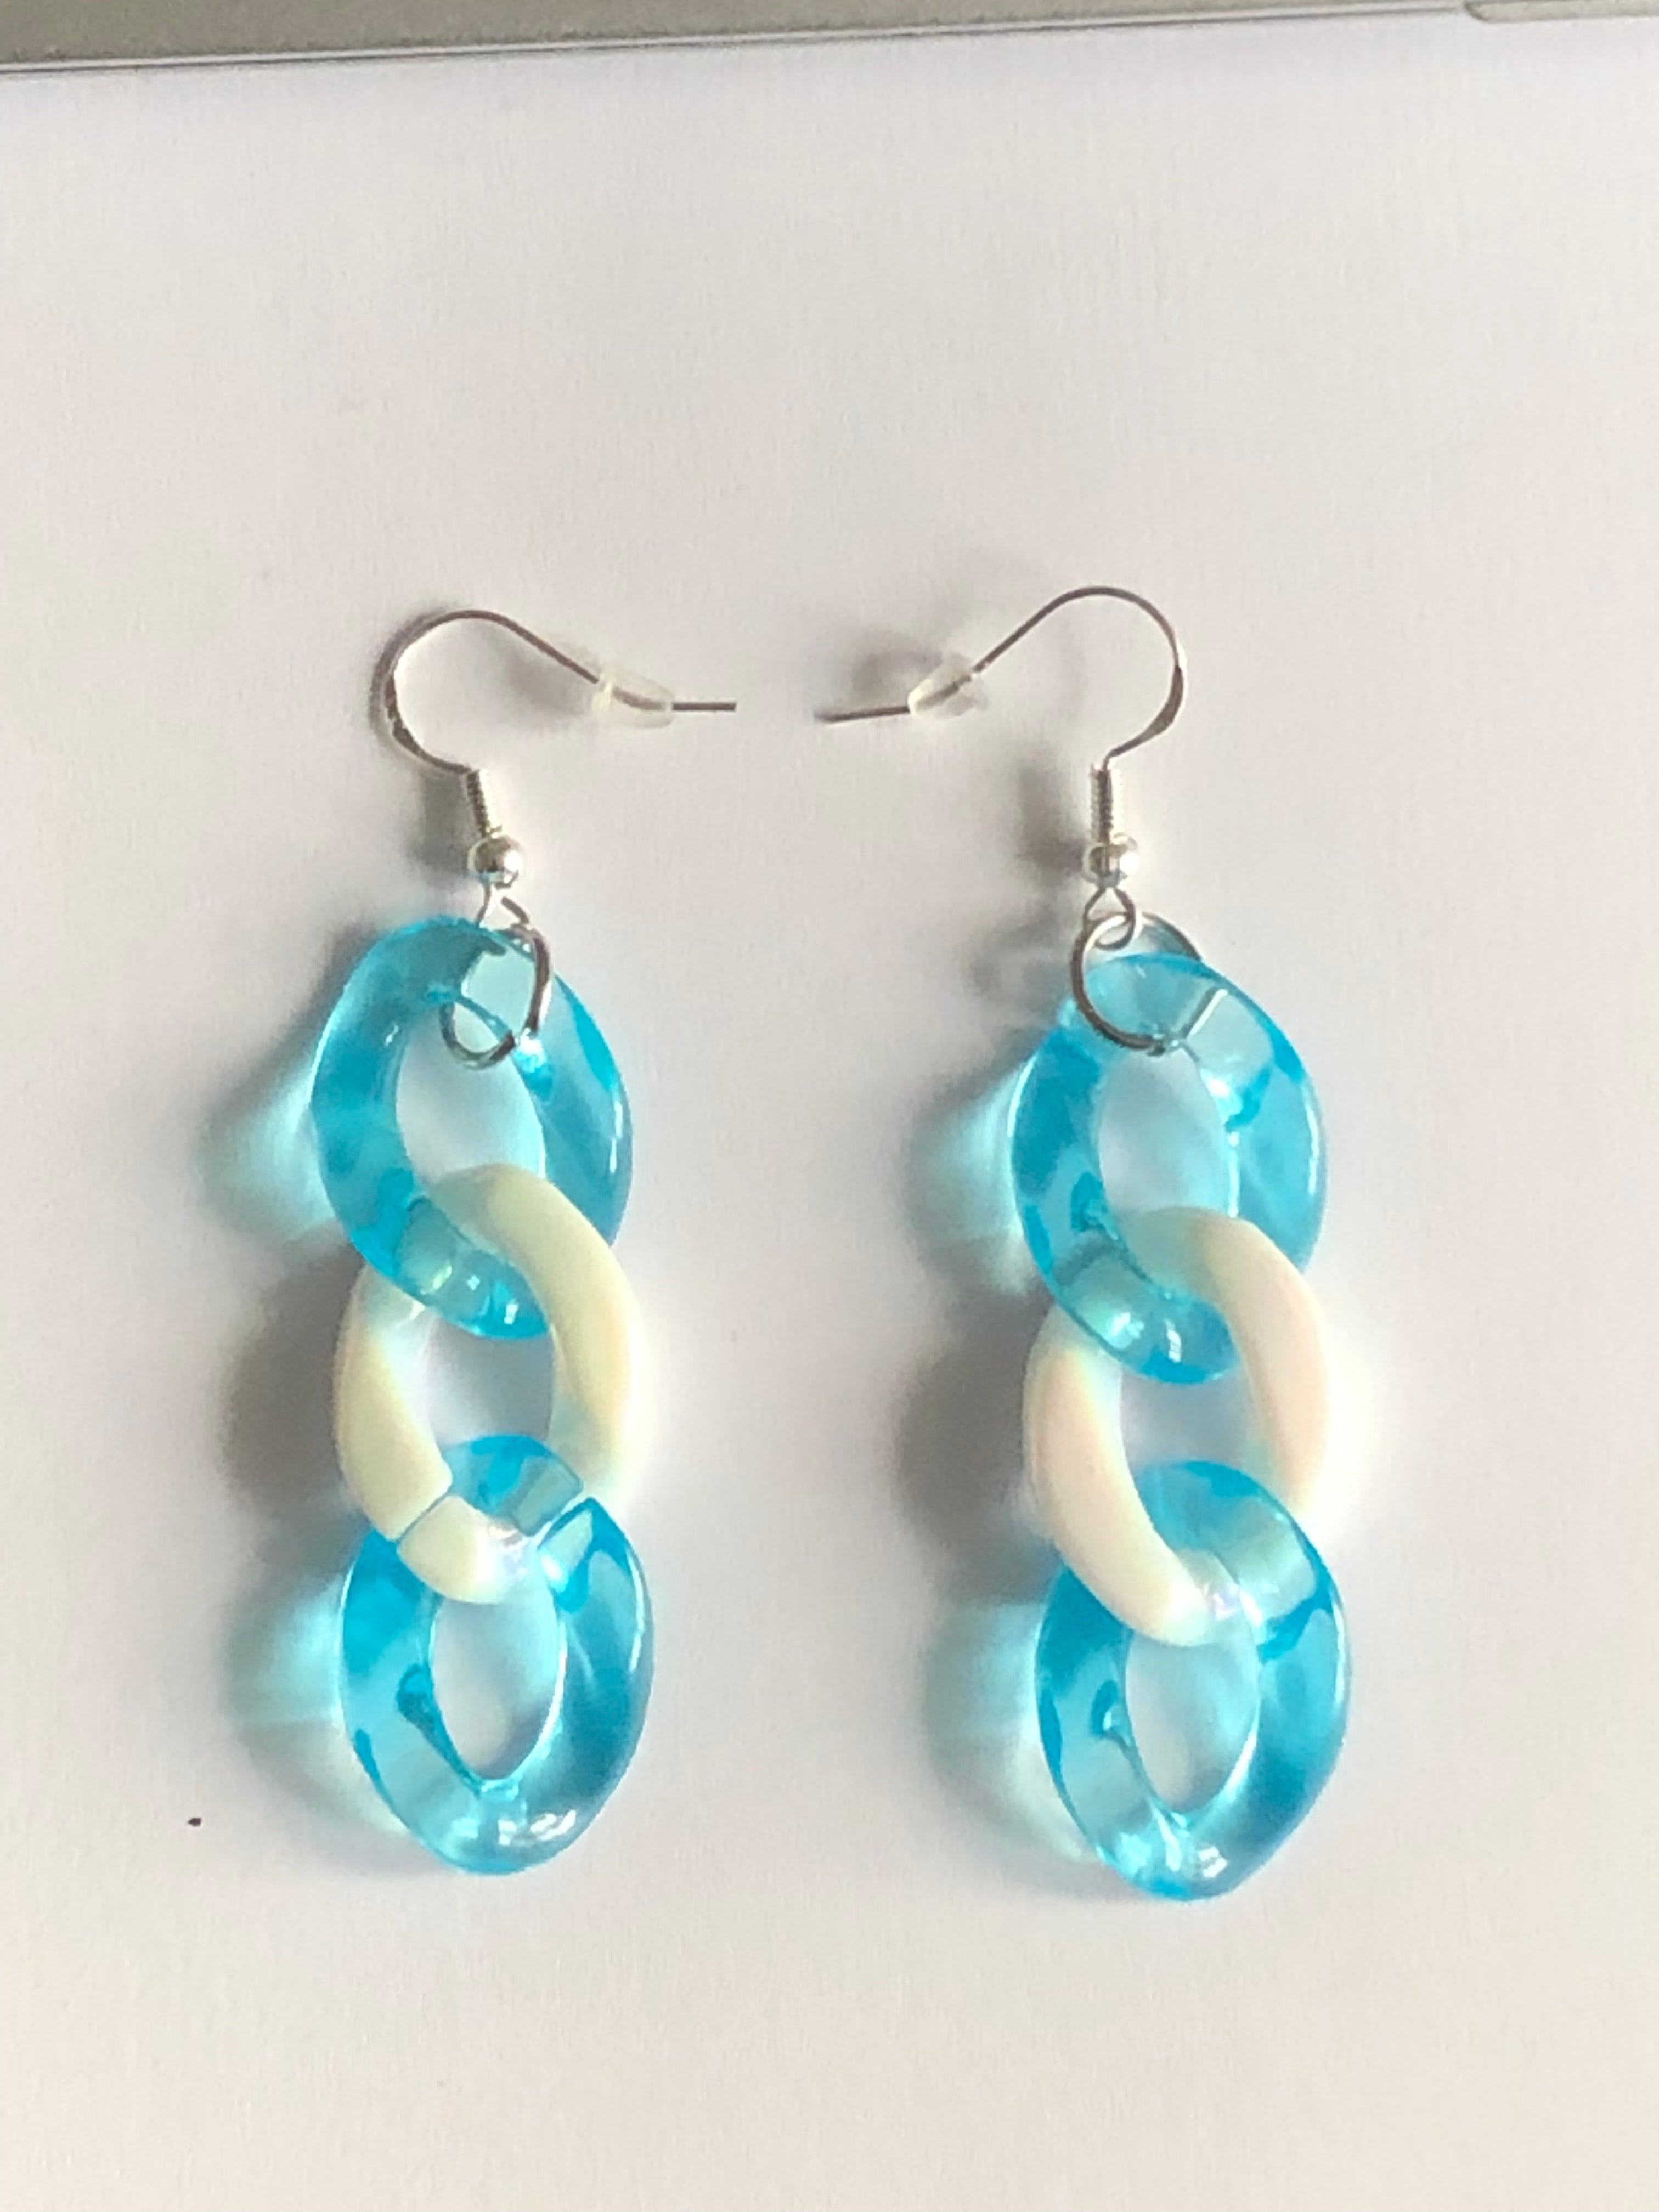 Boucles d’oreilles motif chaîne couleurs translucides, 3 maillons collection « Jade3 »